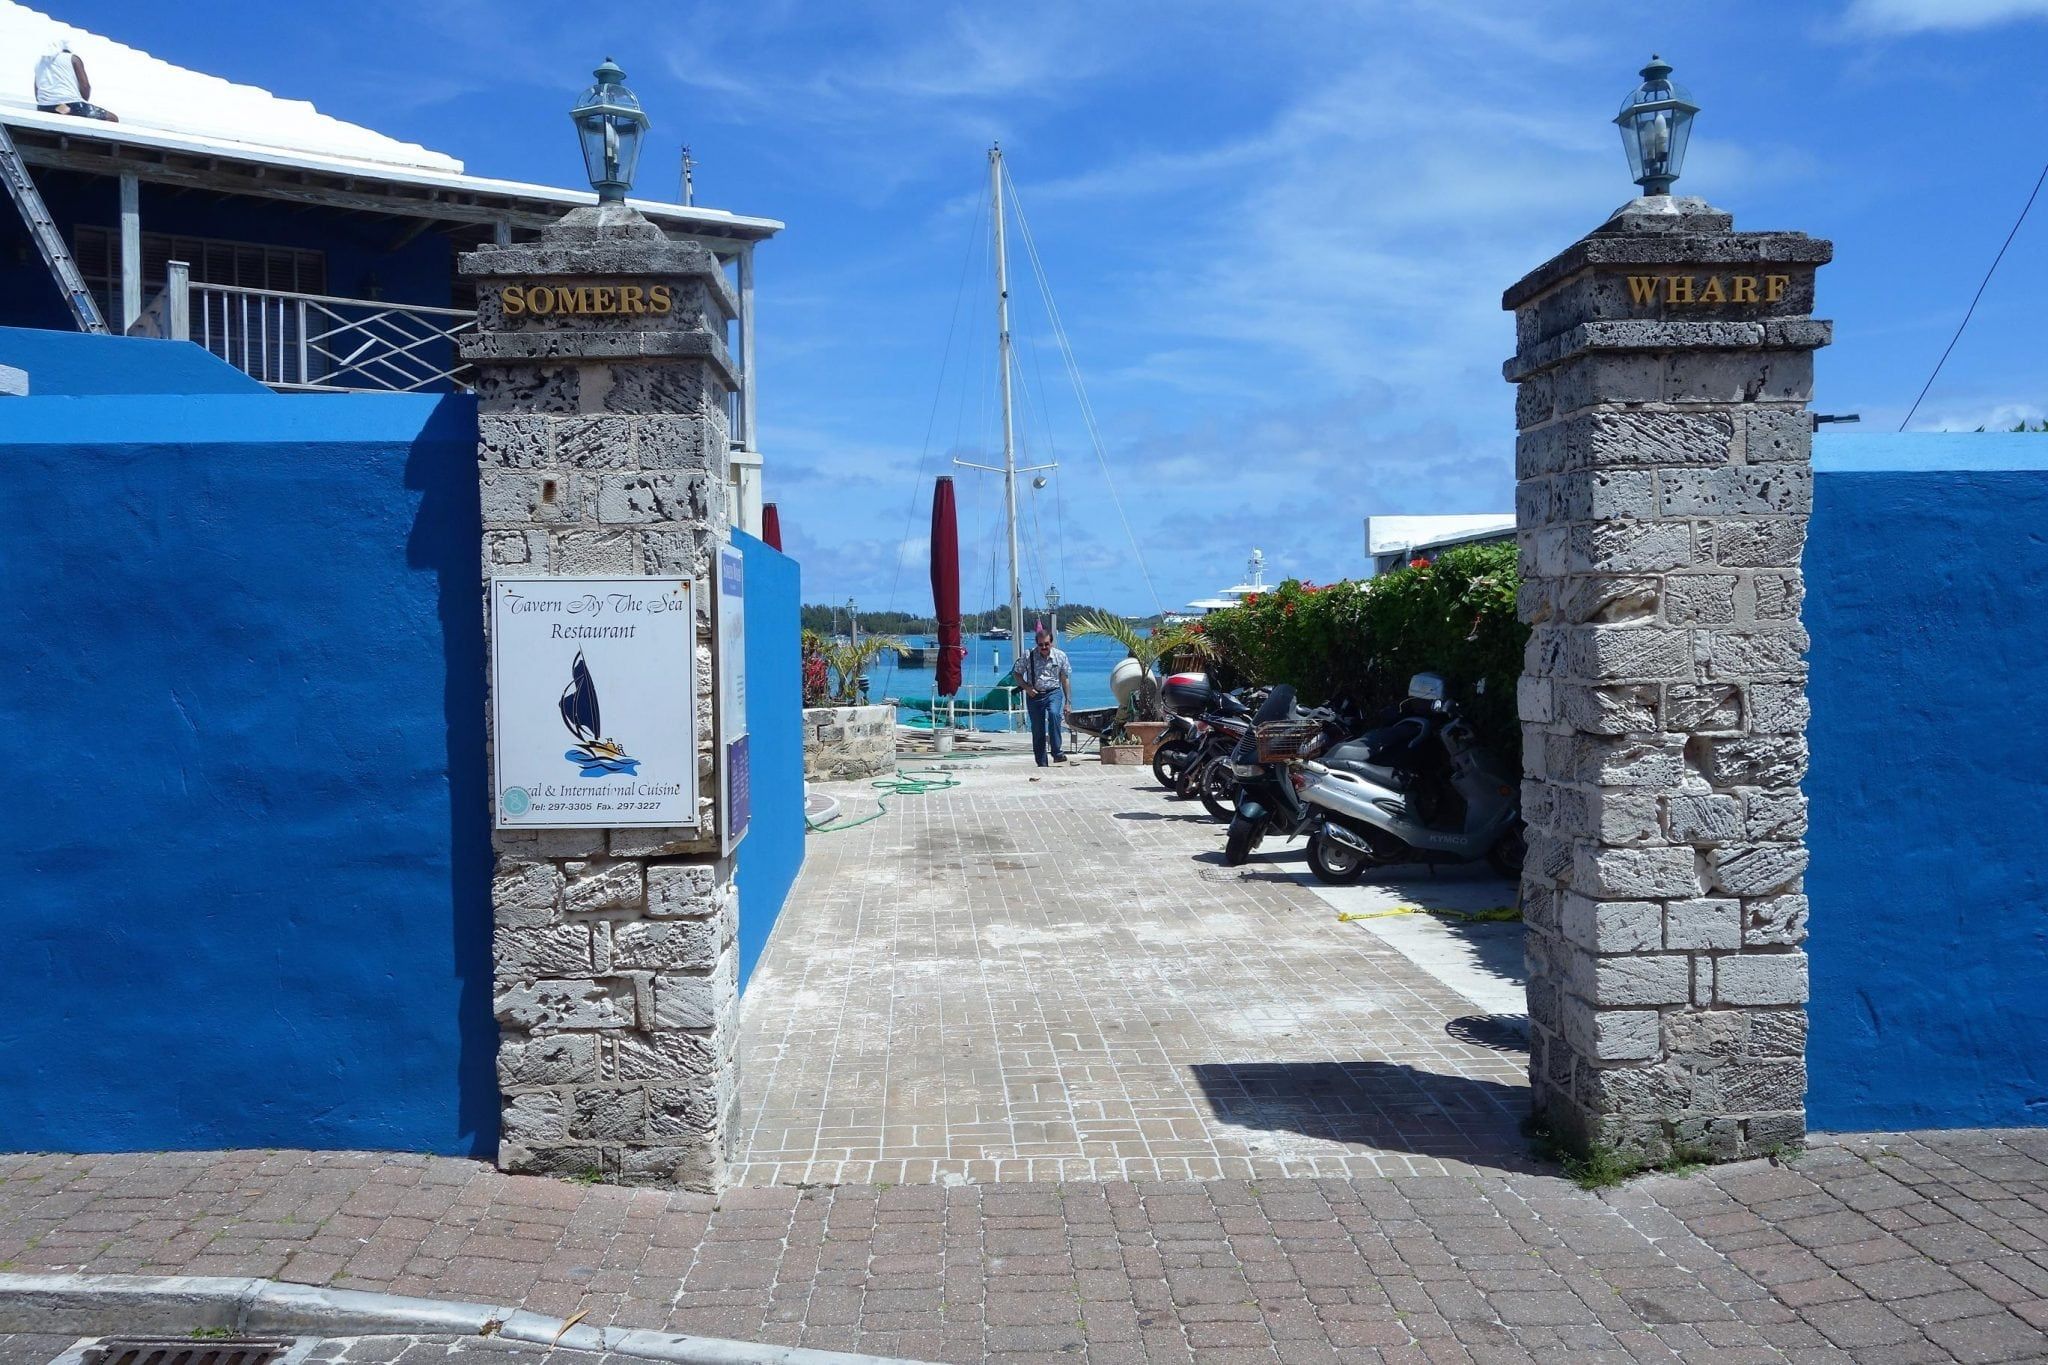 St. George's Bermuda Walking Tour